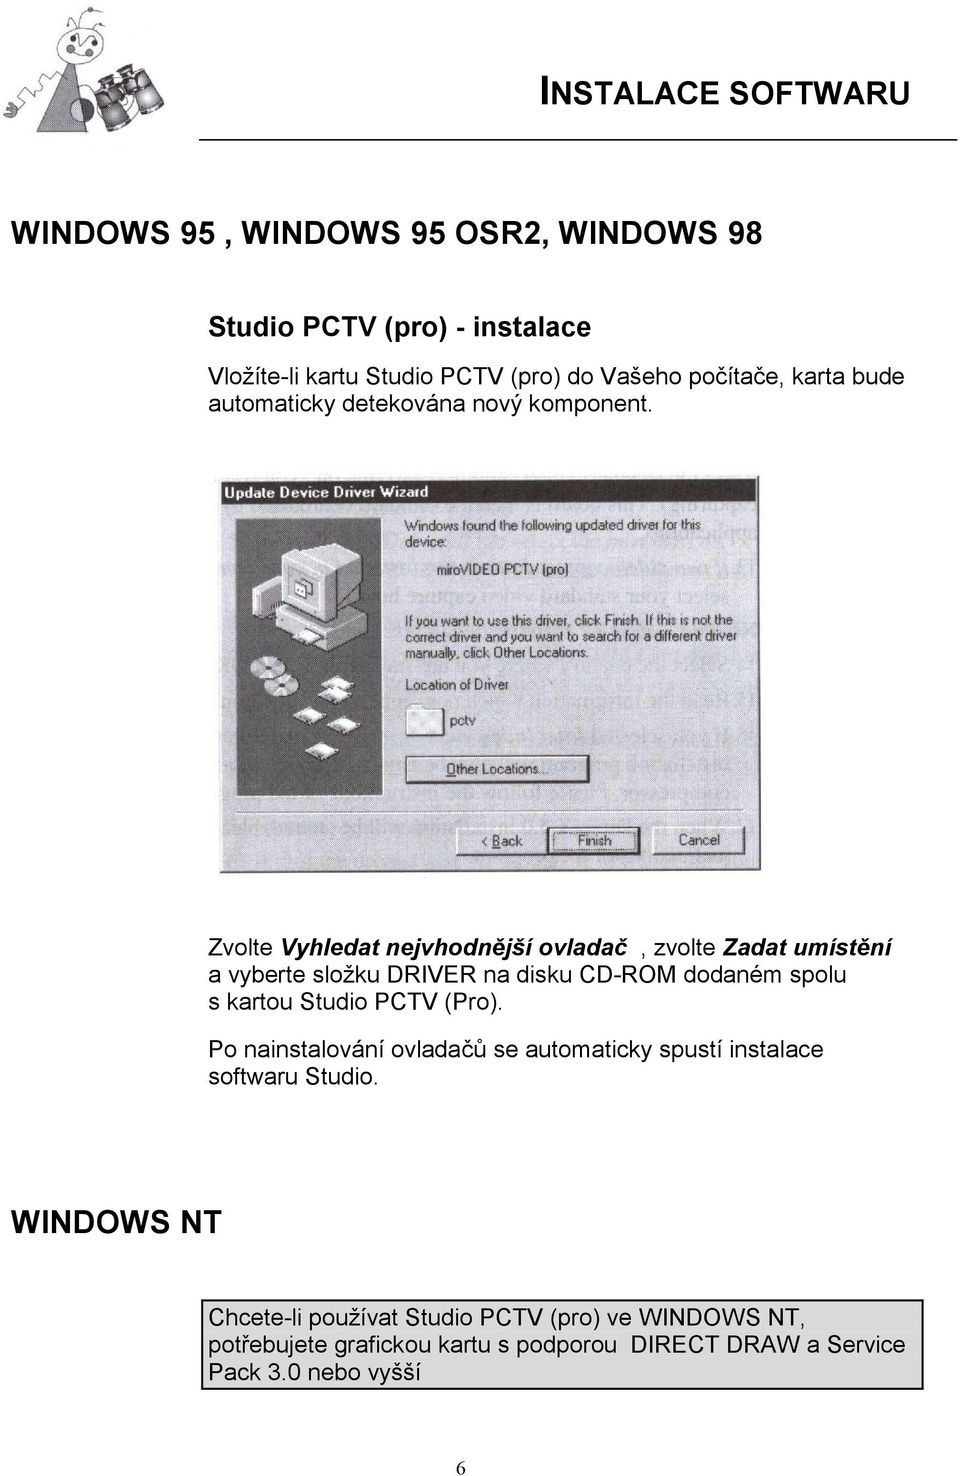 Zvolte Vyhledat nejvhodnější ovladač, zvolte Zadat umístění a vyberte složku DRIVER na disku CD-ROM dodaném spolu s kartou Studio PCTV